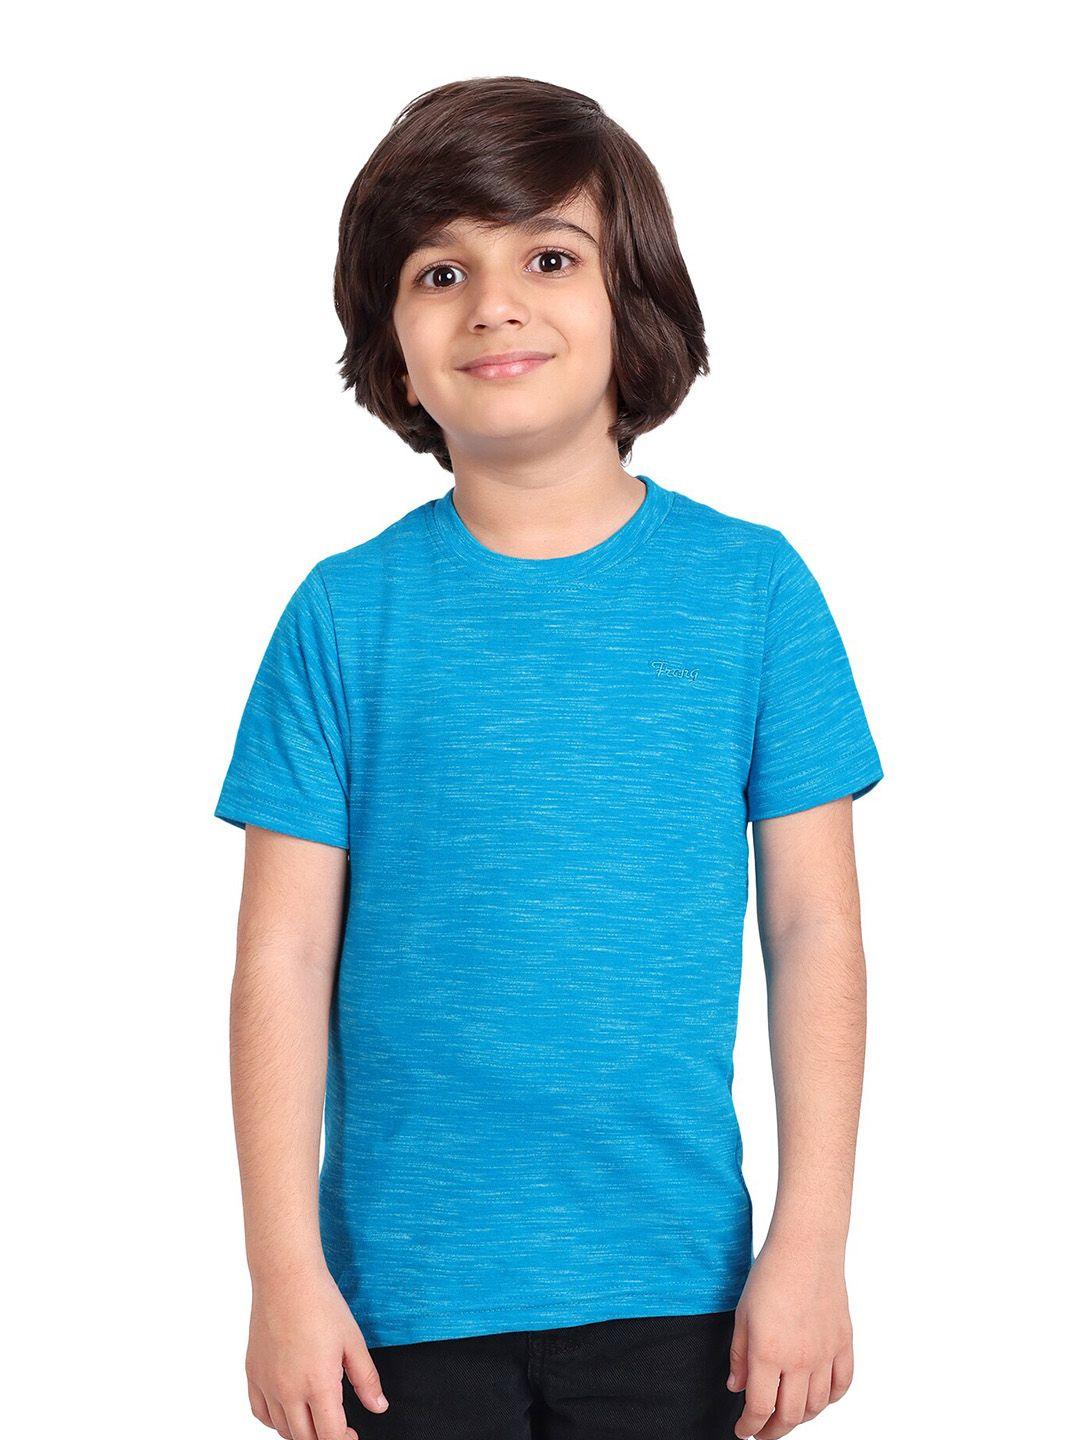 baesd-boys-blue-t-shirt